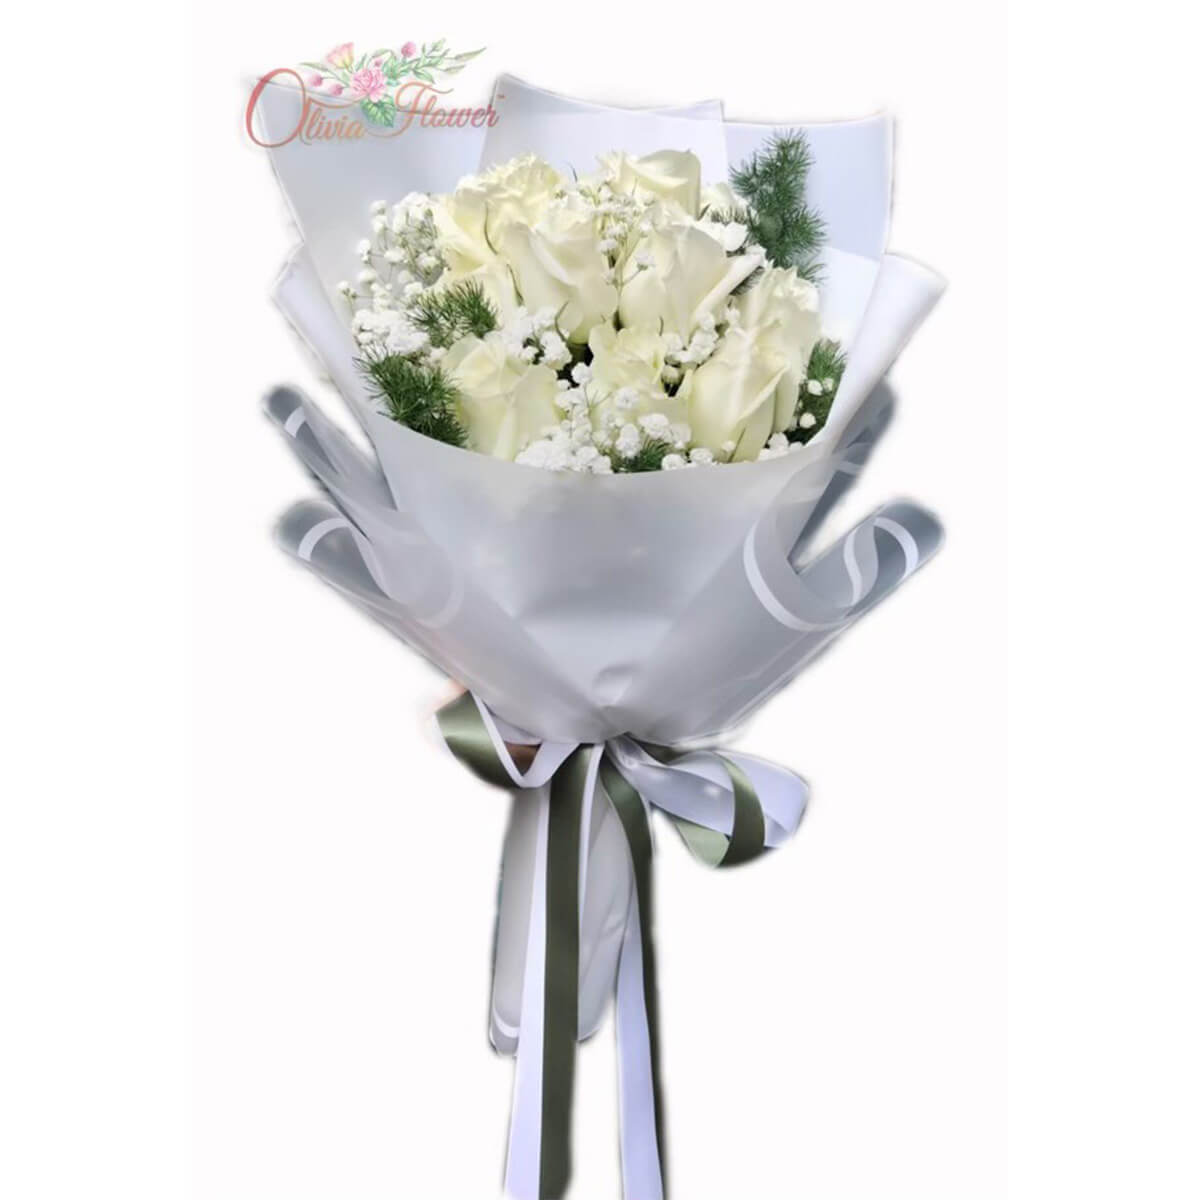 ช่อดอกกุหลาบขาว 10 ดอก แซมด้วยยิปซี | ร้านดอกไม้ Olivia Flower™